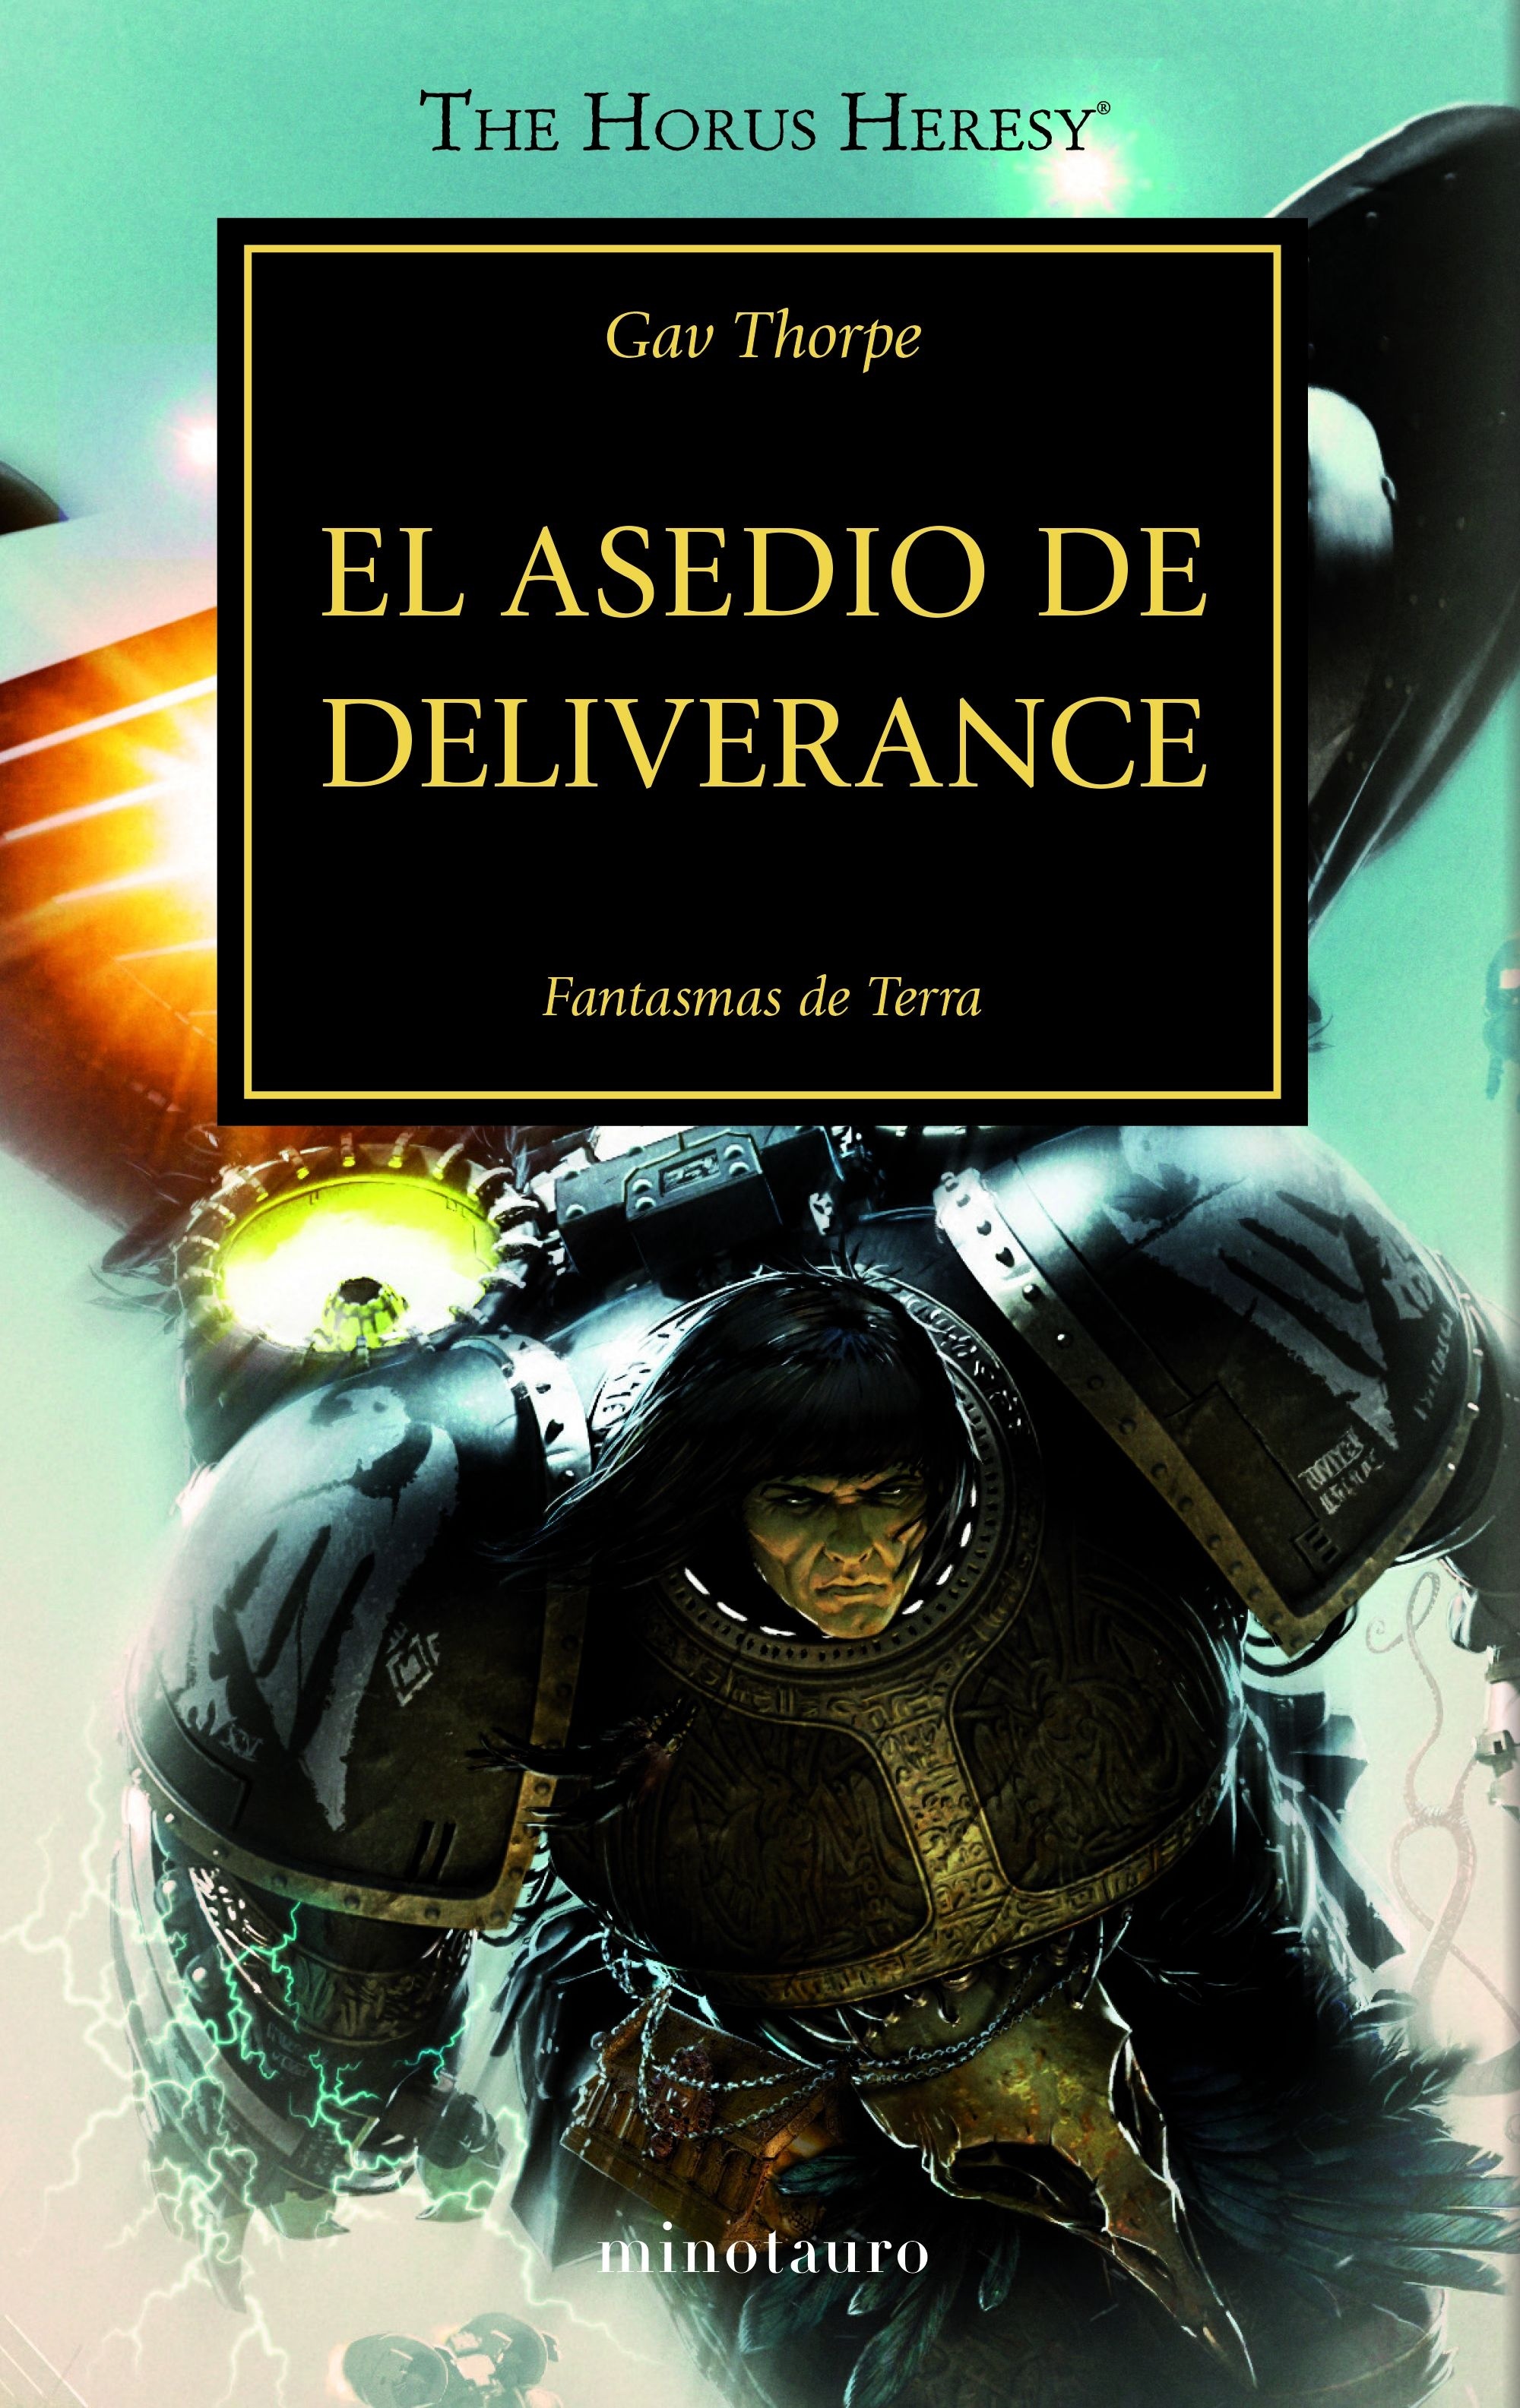 Asedio de Deliverance, El "La Herejía de Horus 18"